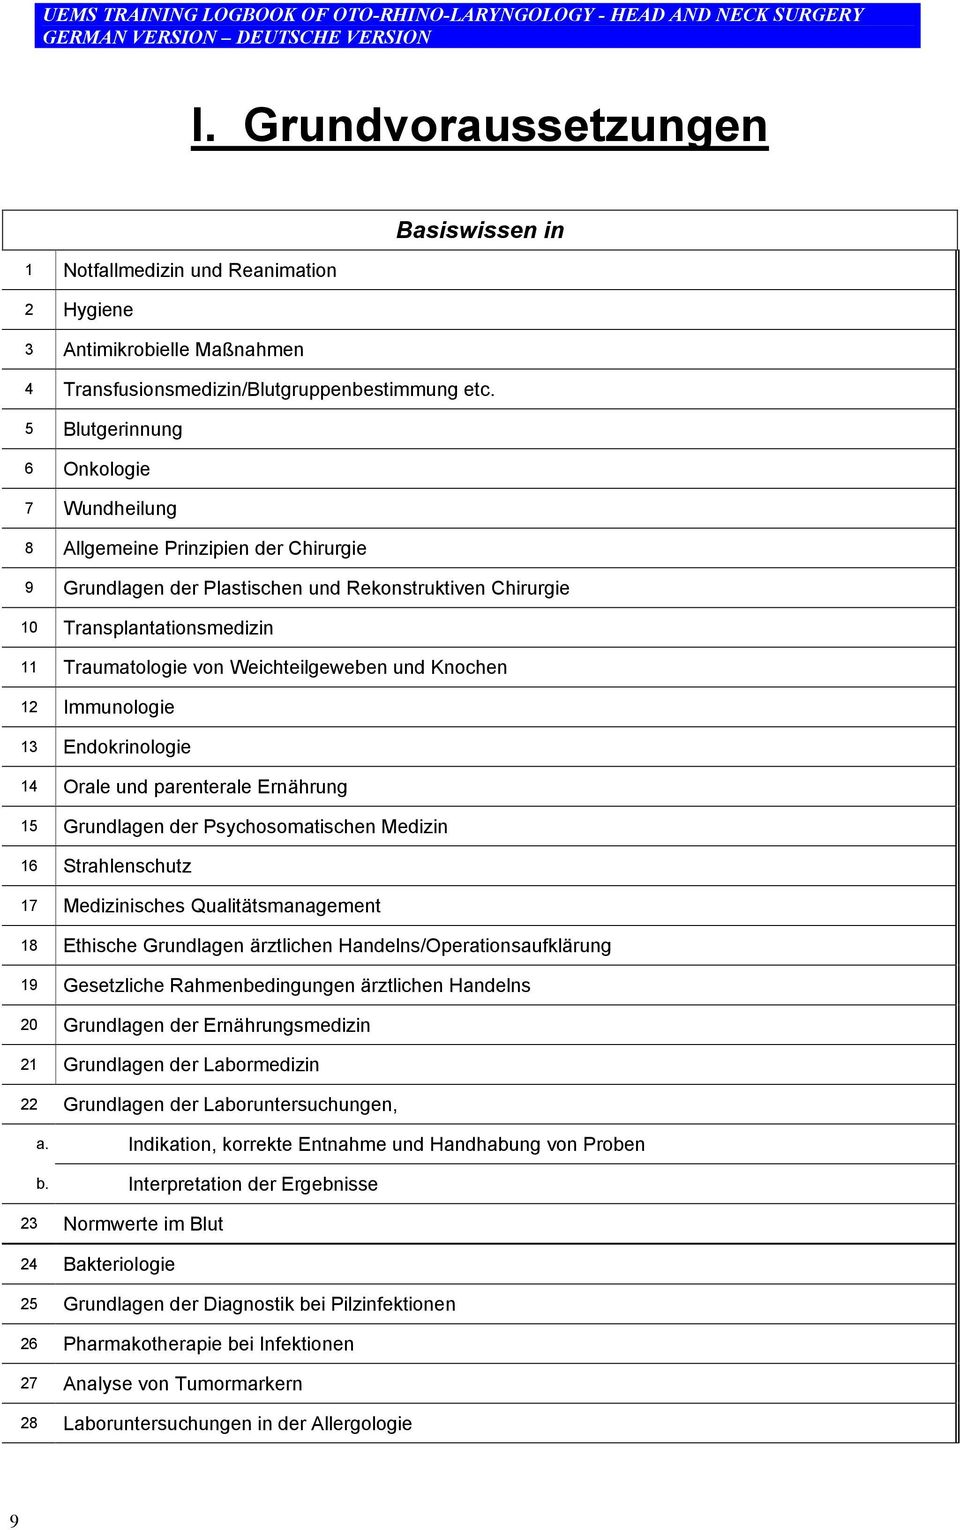 Endokrinologie 14 Orale und parenterale Ernährung 15 Grundlagen der Psychosomatischen Medizin 16 Strahlenschutz 17 Medizinisches Qualitätsmanagement 18 Ethische Grundlagen ärztlichen